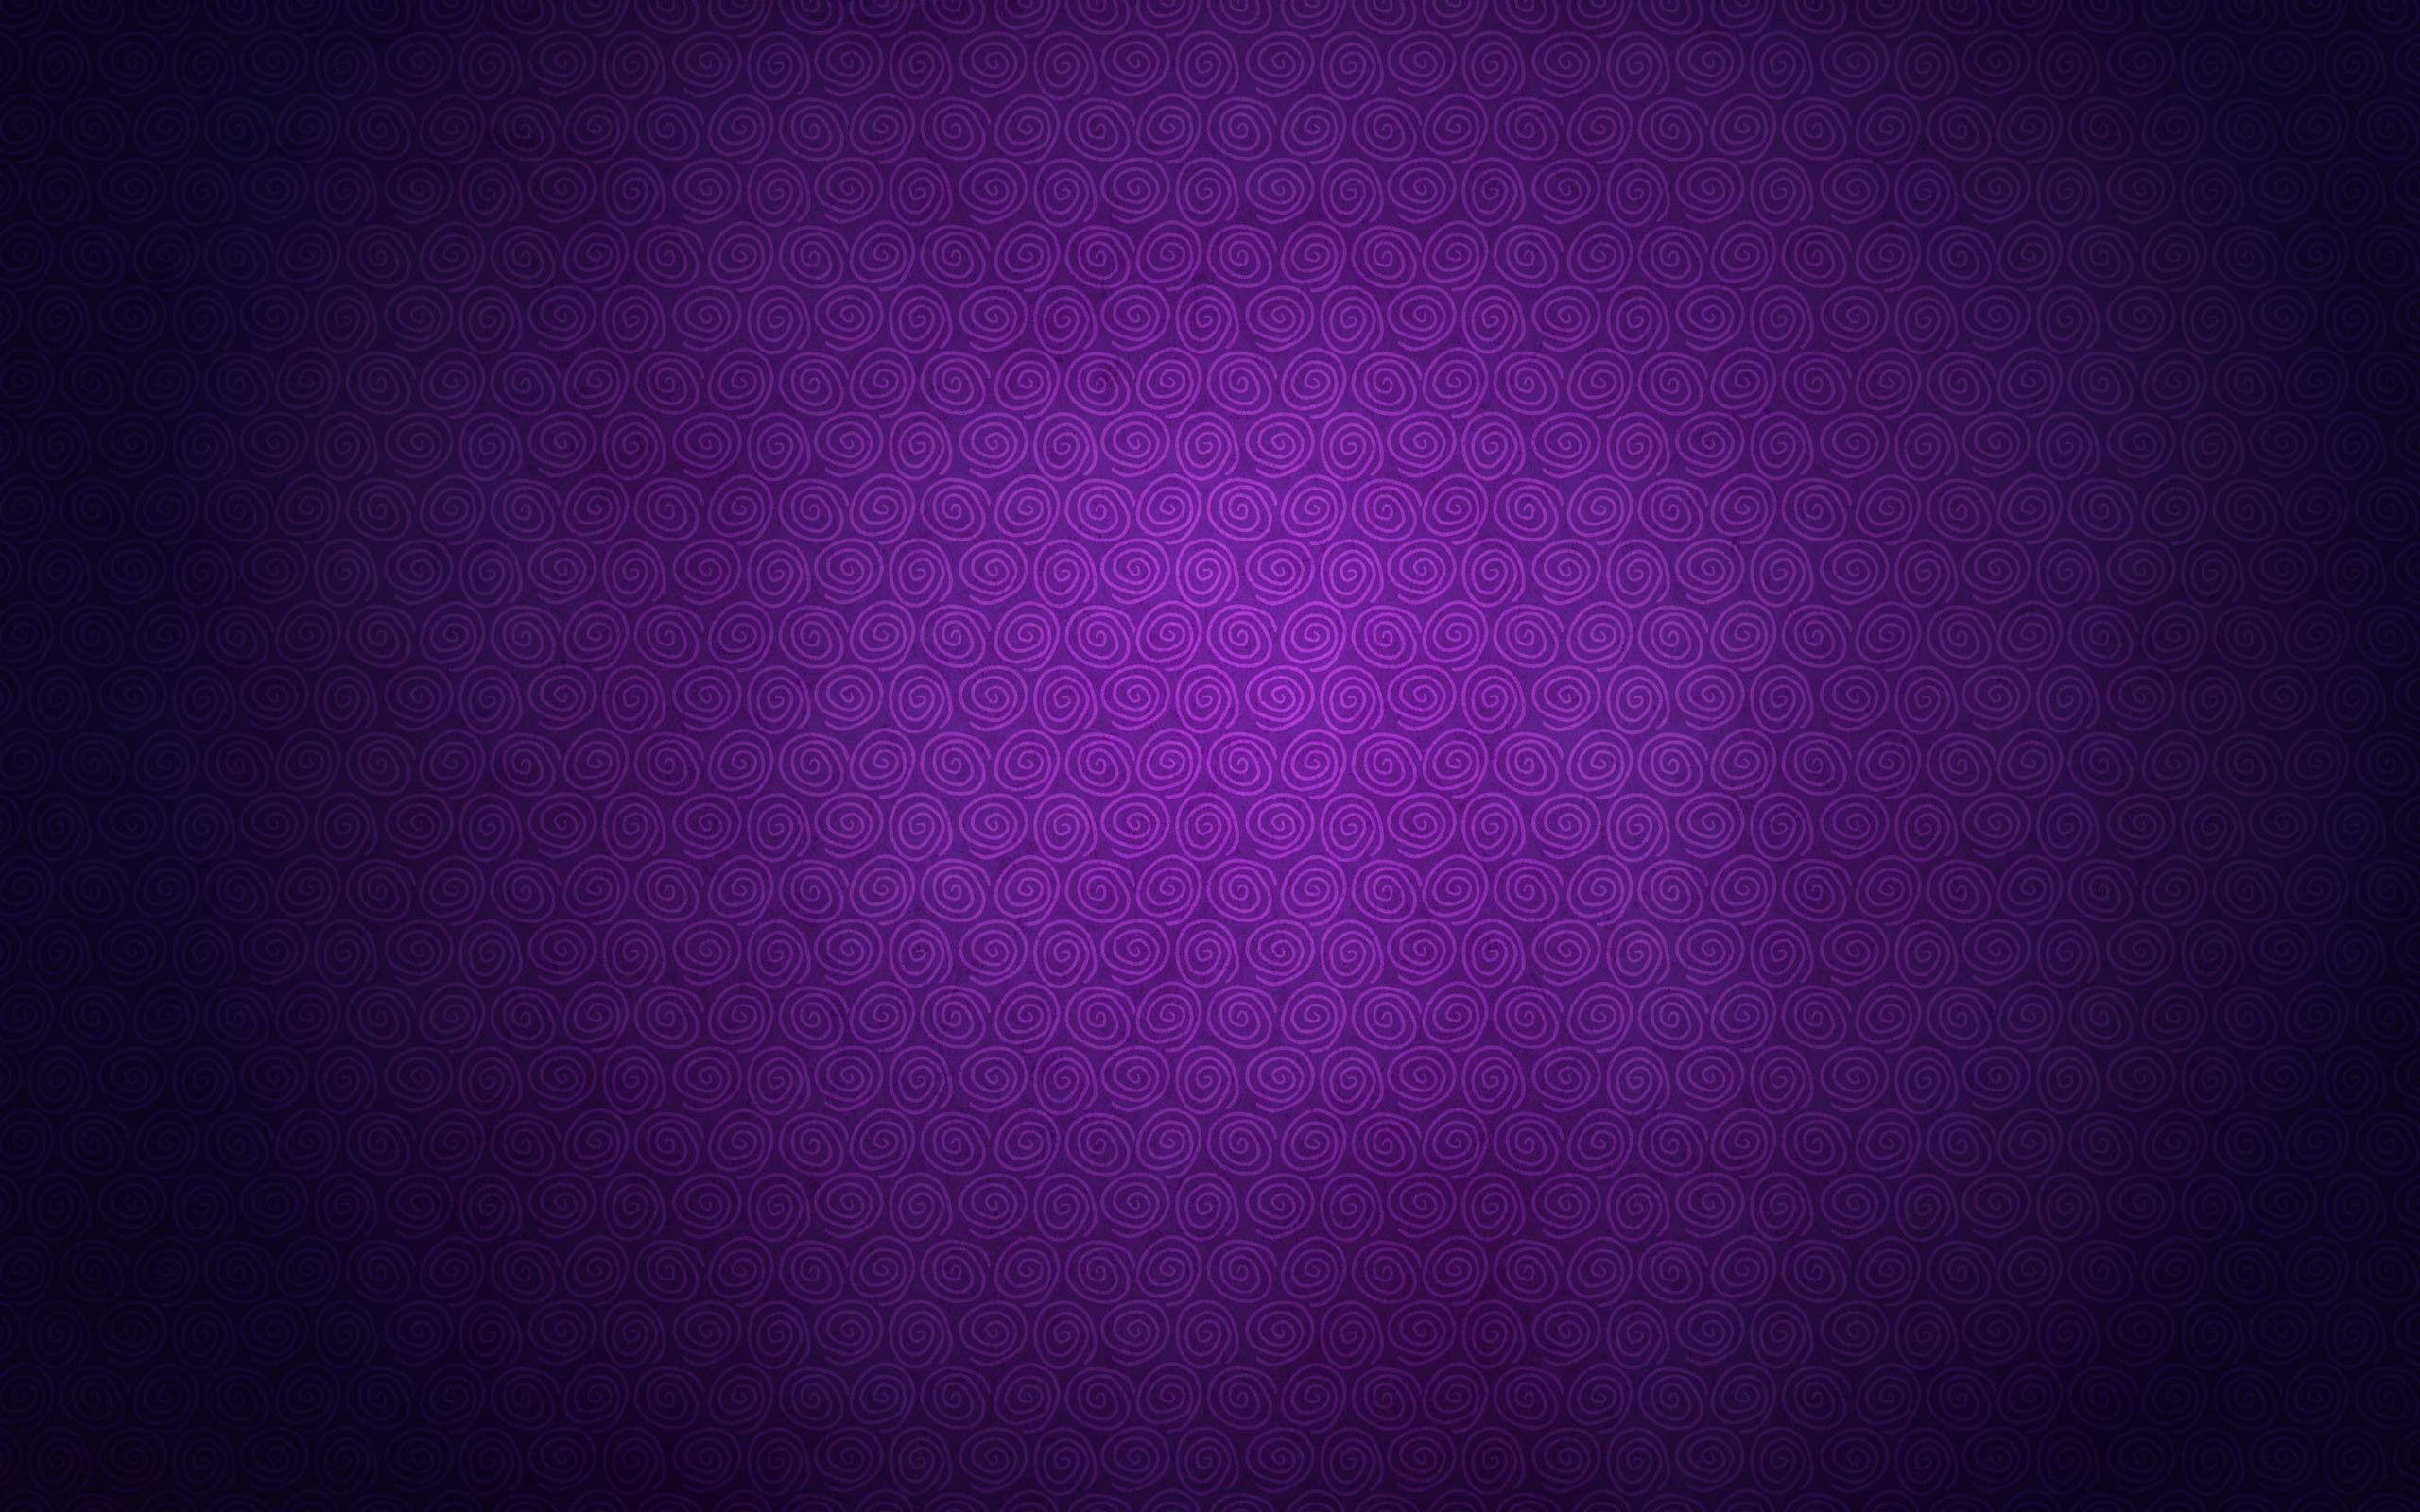 Fondos de color púrpura oscuro